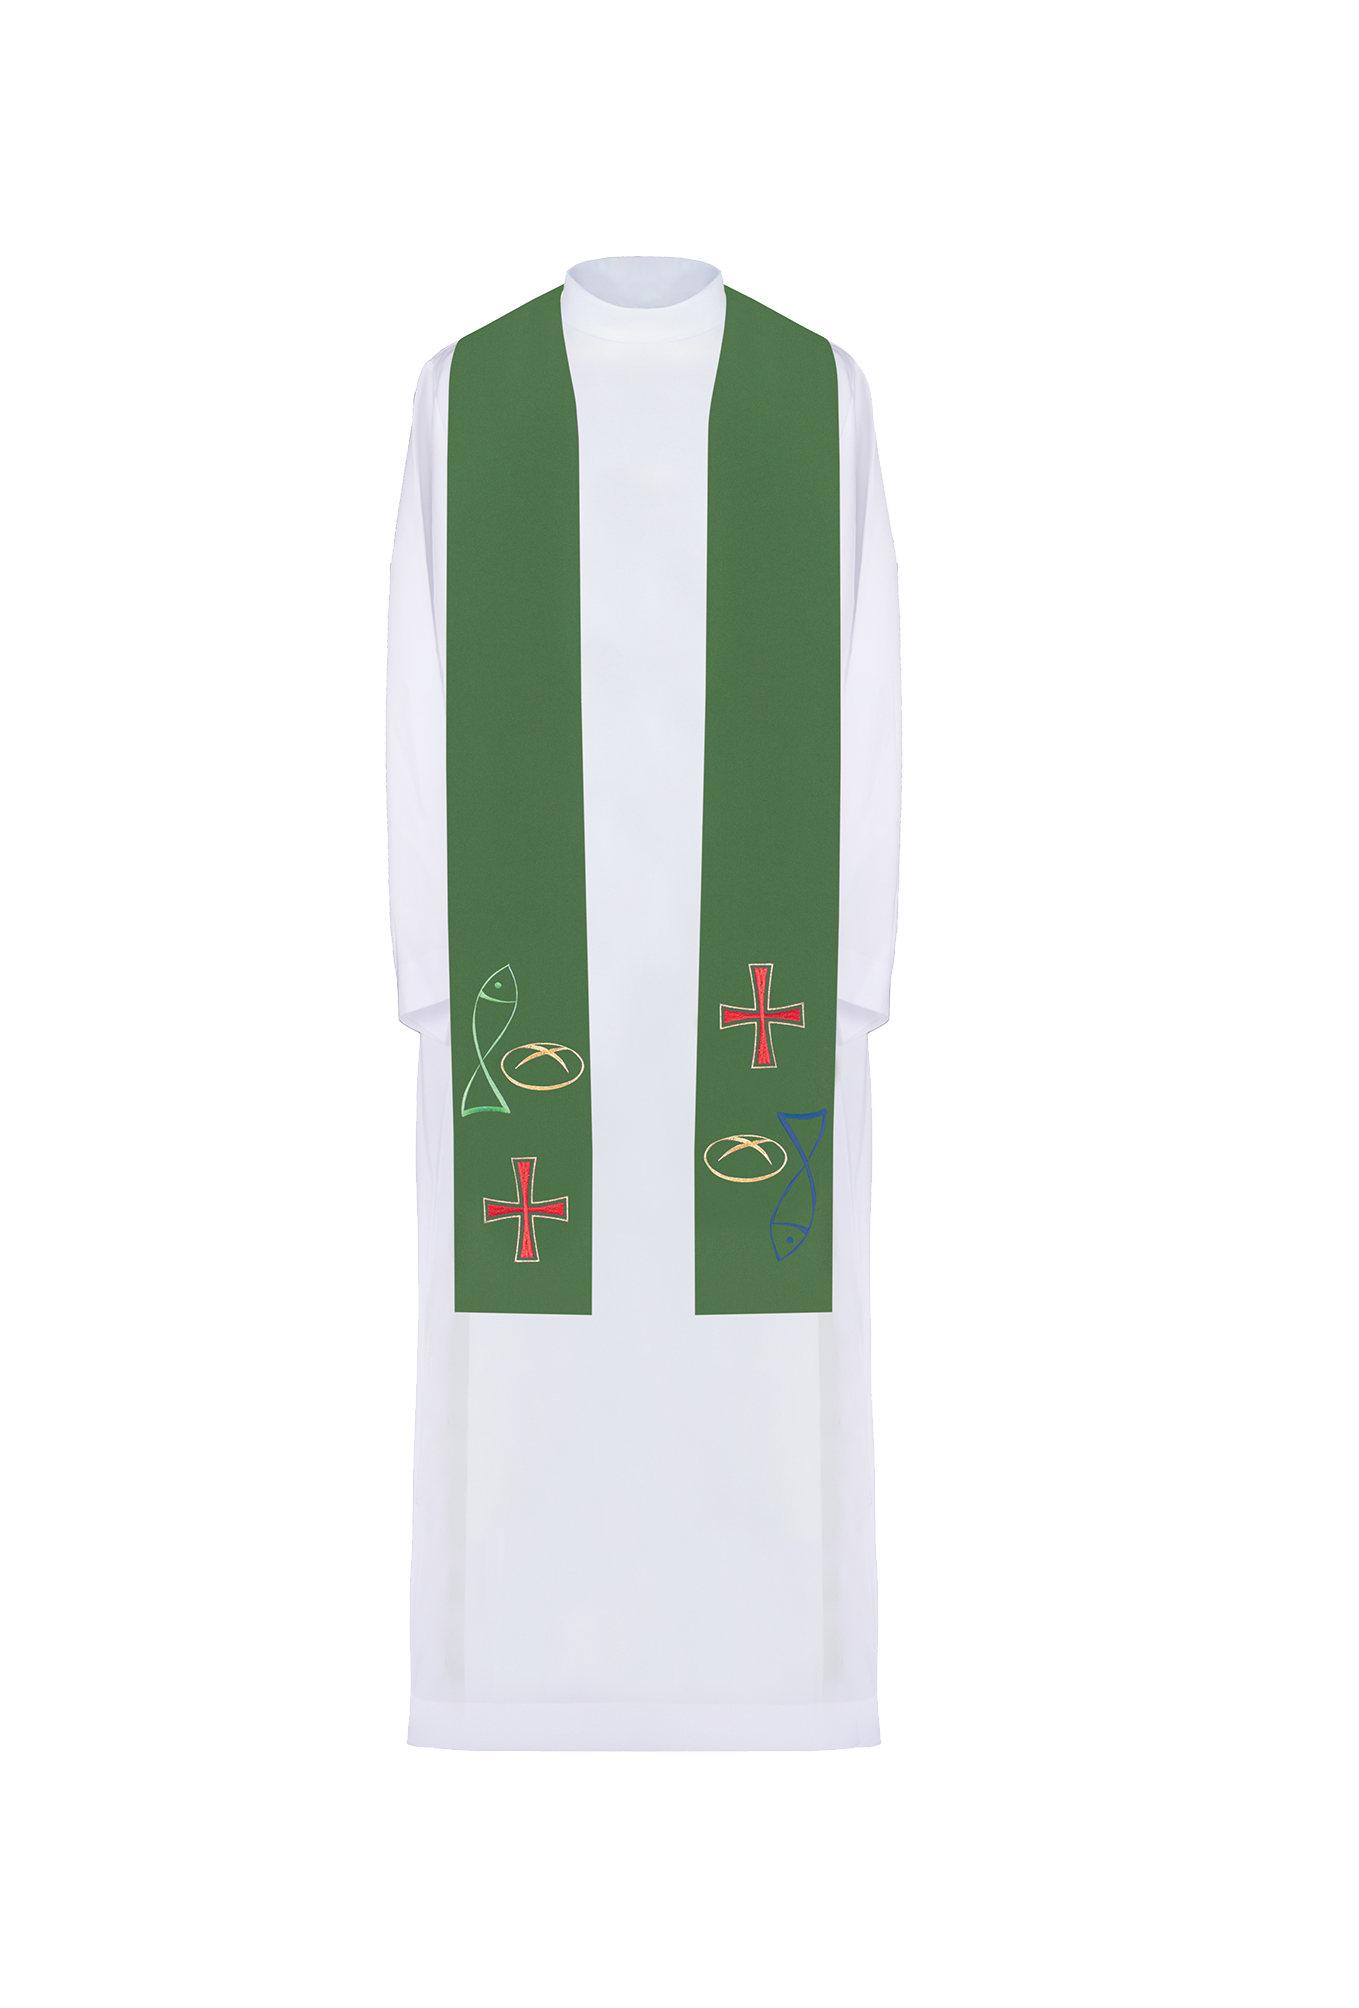 Zielona stuła kapłańska haftowana z motywem Ryba Chleb Krzyż